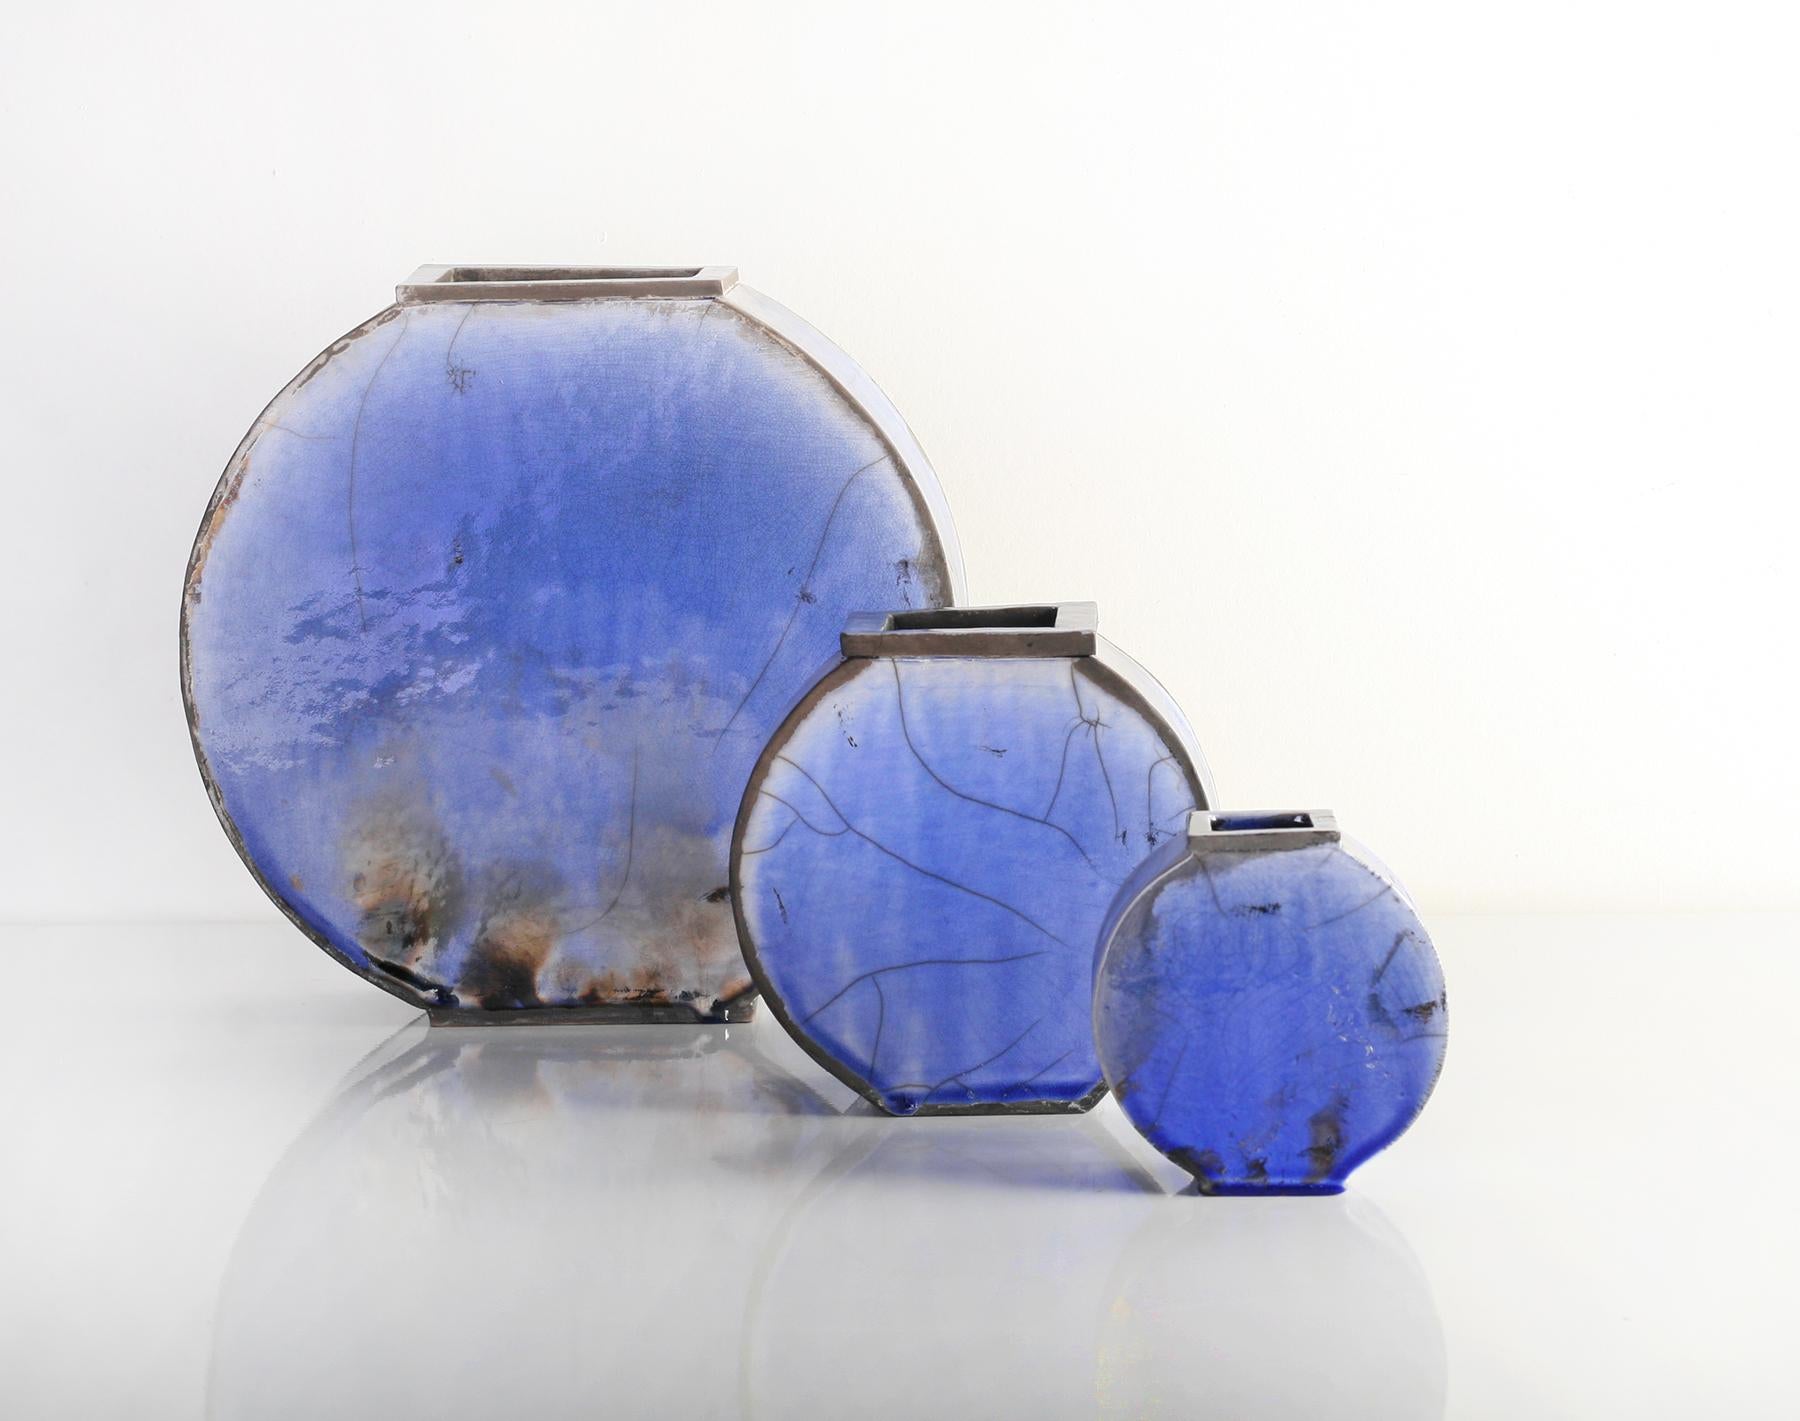 Satz von 3 blauen Vasen von Doa Ceramics
Abmessungen: 
Klein 3,5